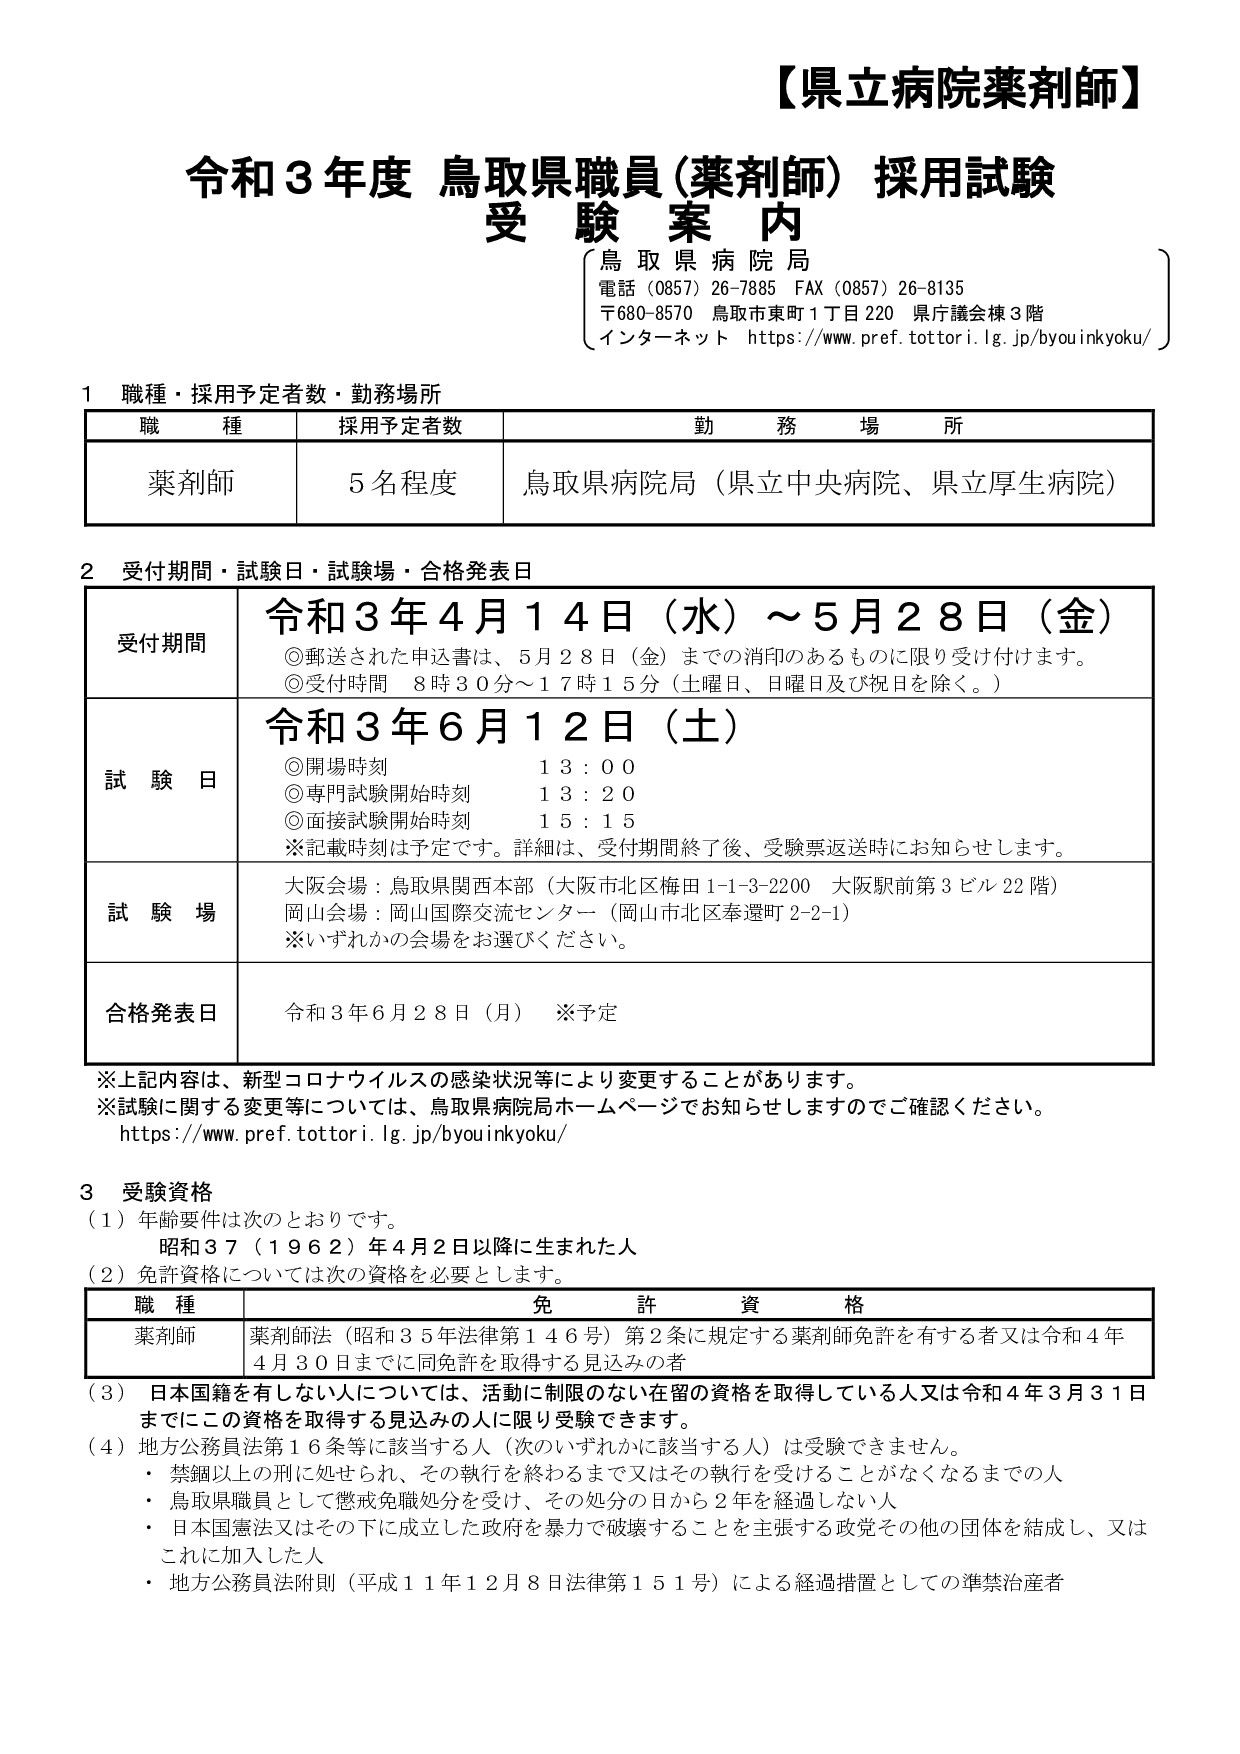 鳥取県職員採用試験情報≪薬剤師・看護師≫ | 地域のトピックス